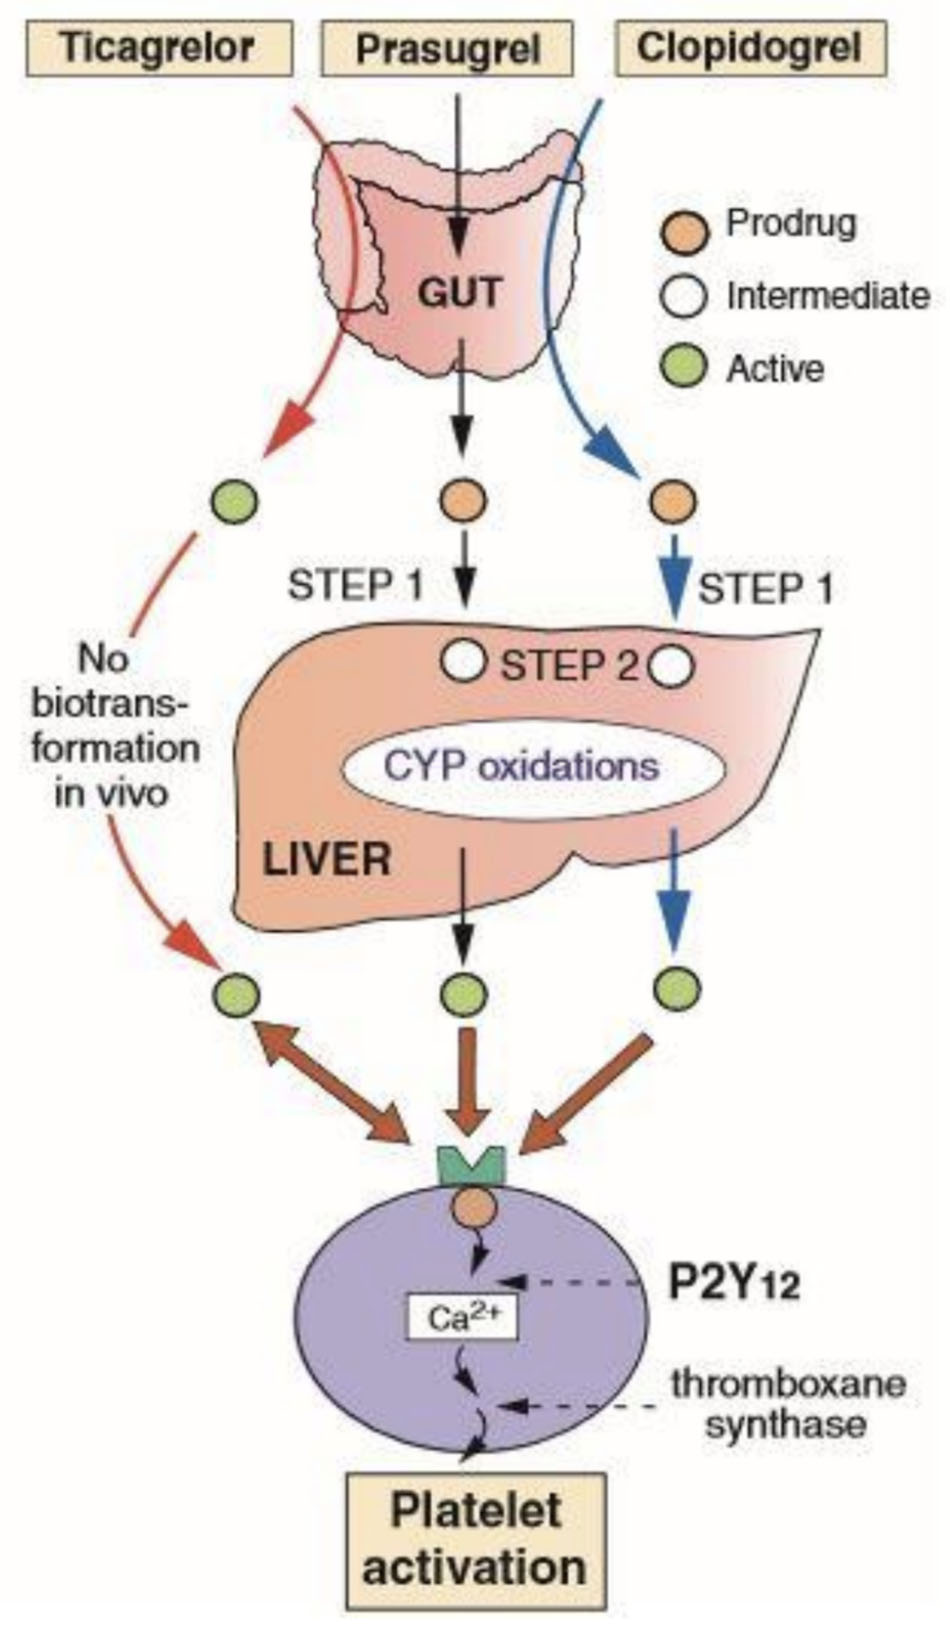 Sơ đồ hoạt hóa của các loại thuốc ức chế recepter P2Y12.